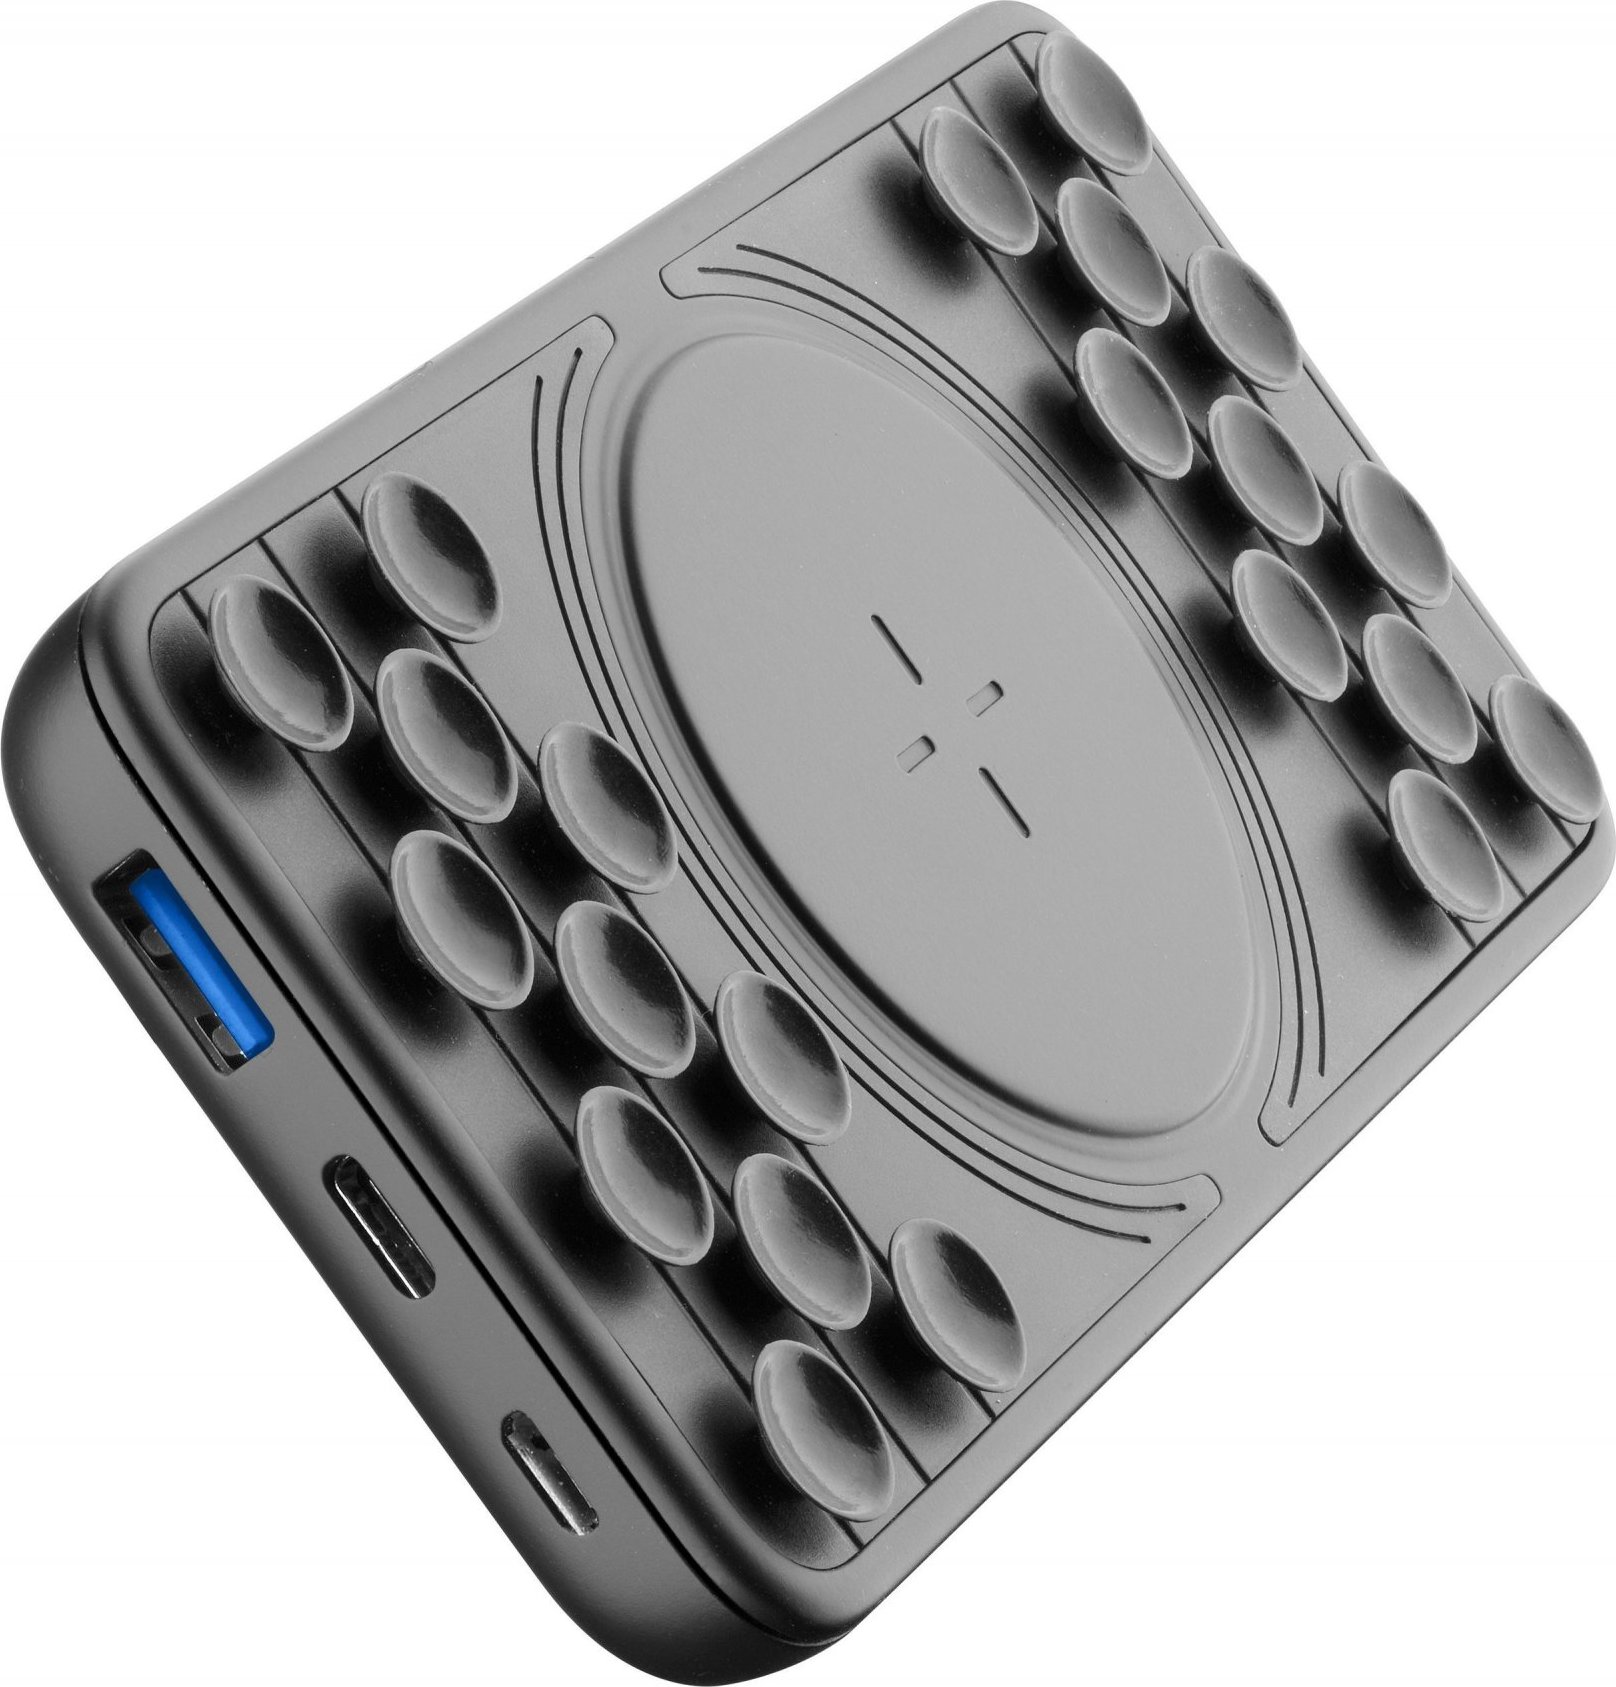 Powerbanka Cellularline Octopus Wireless Powerbank s bezdrátovým nabíjením a přísavkami, 10 000 mAh, černá